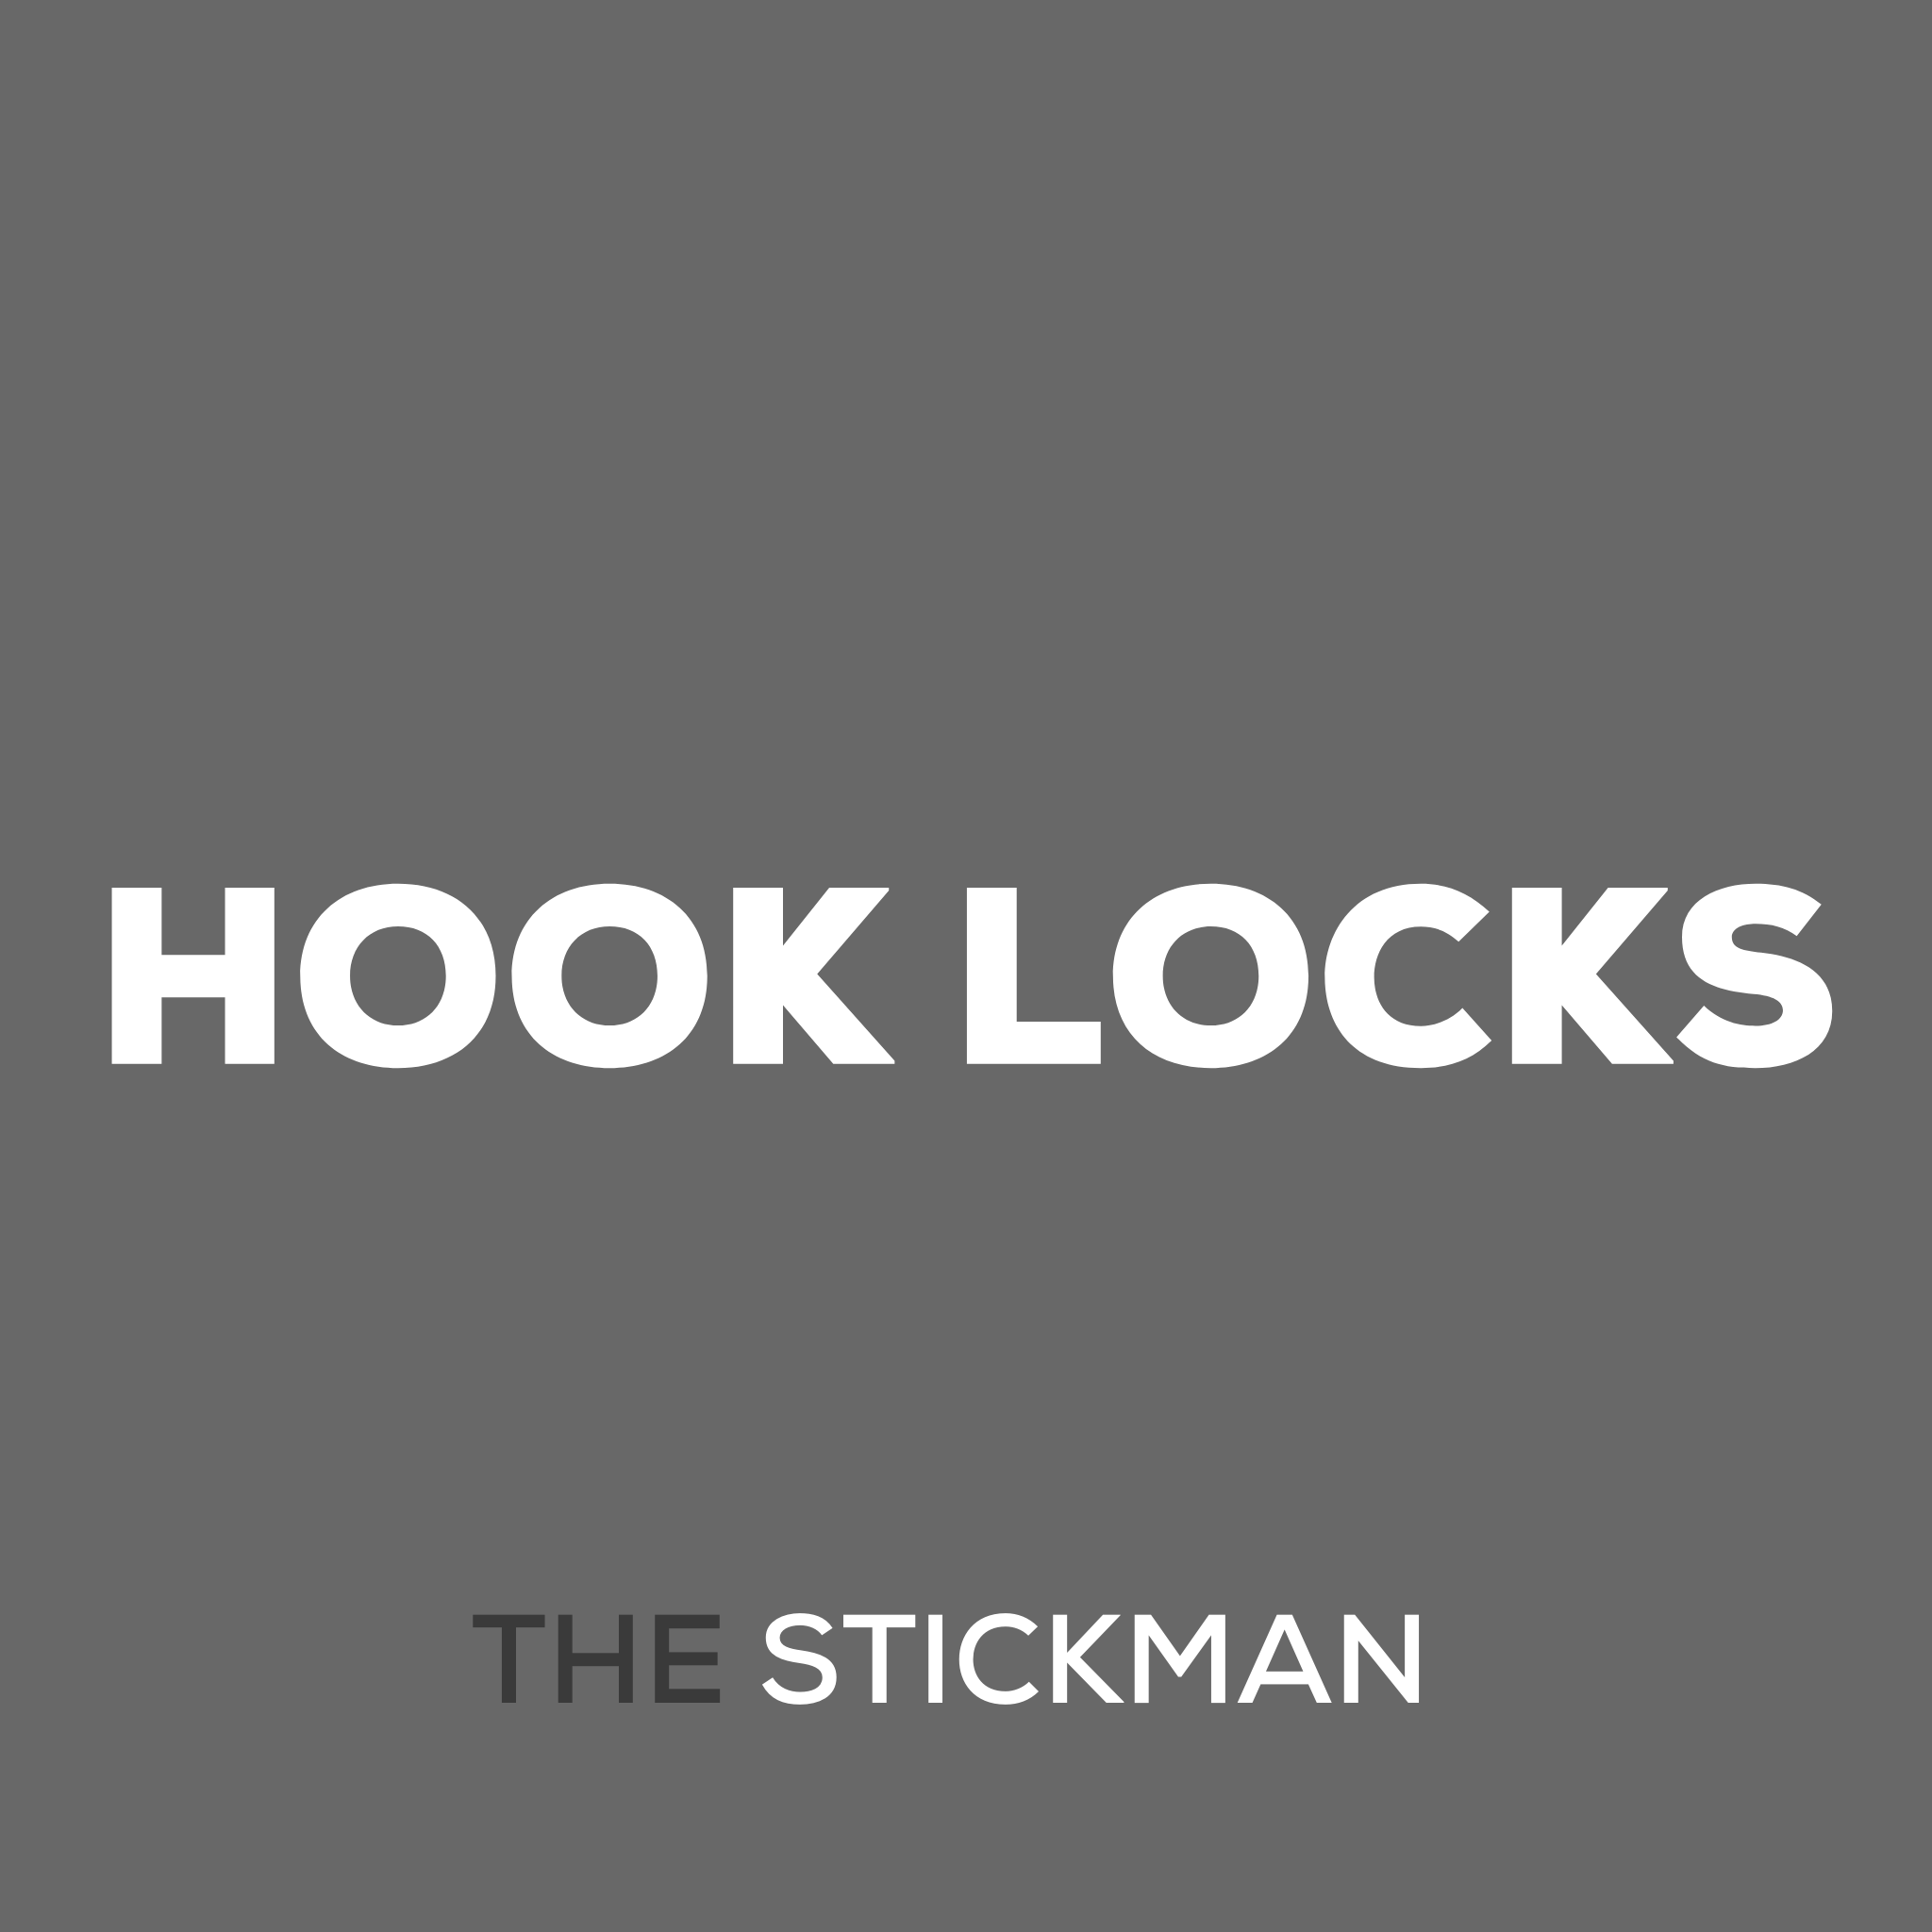 HOOK LOCKS